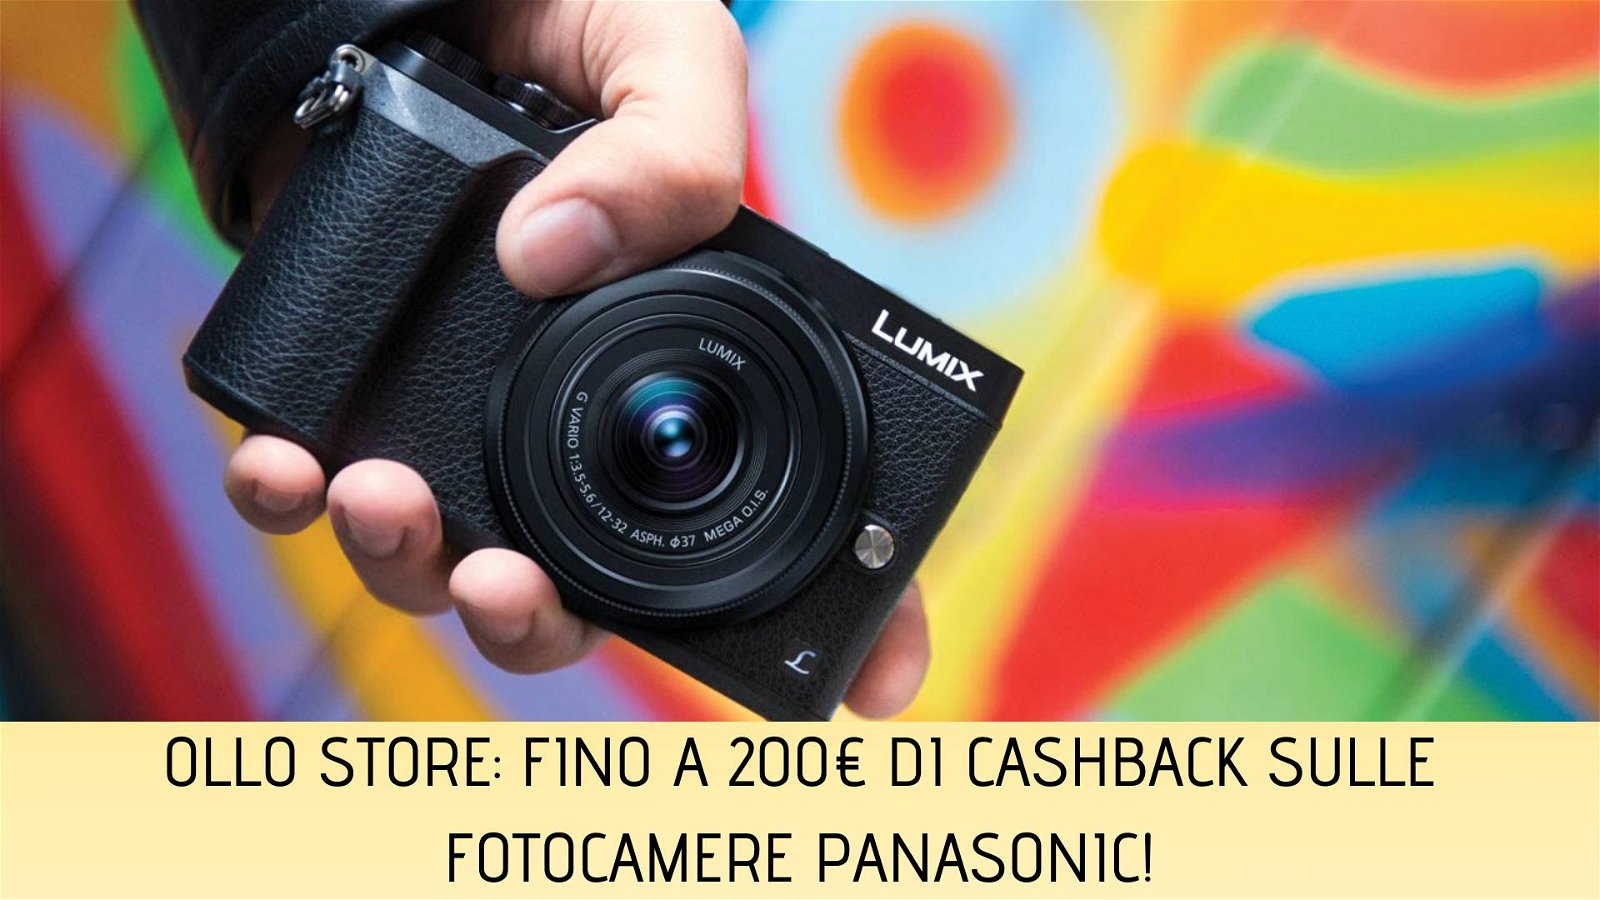 Immagine di Panasonic Cashback: fino a 200€ di sconto su fotocamere della serie G su Ollo Store